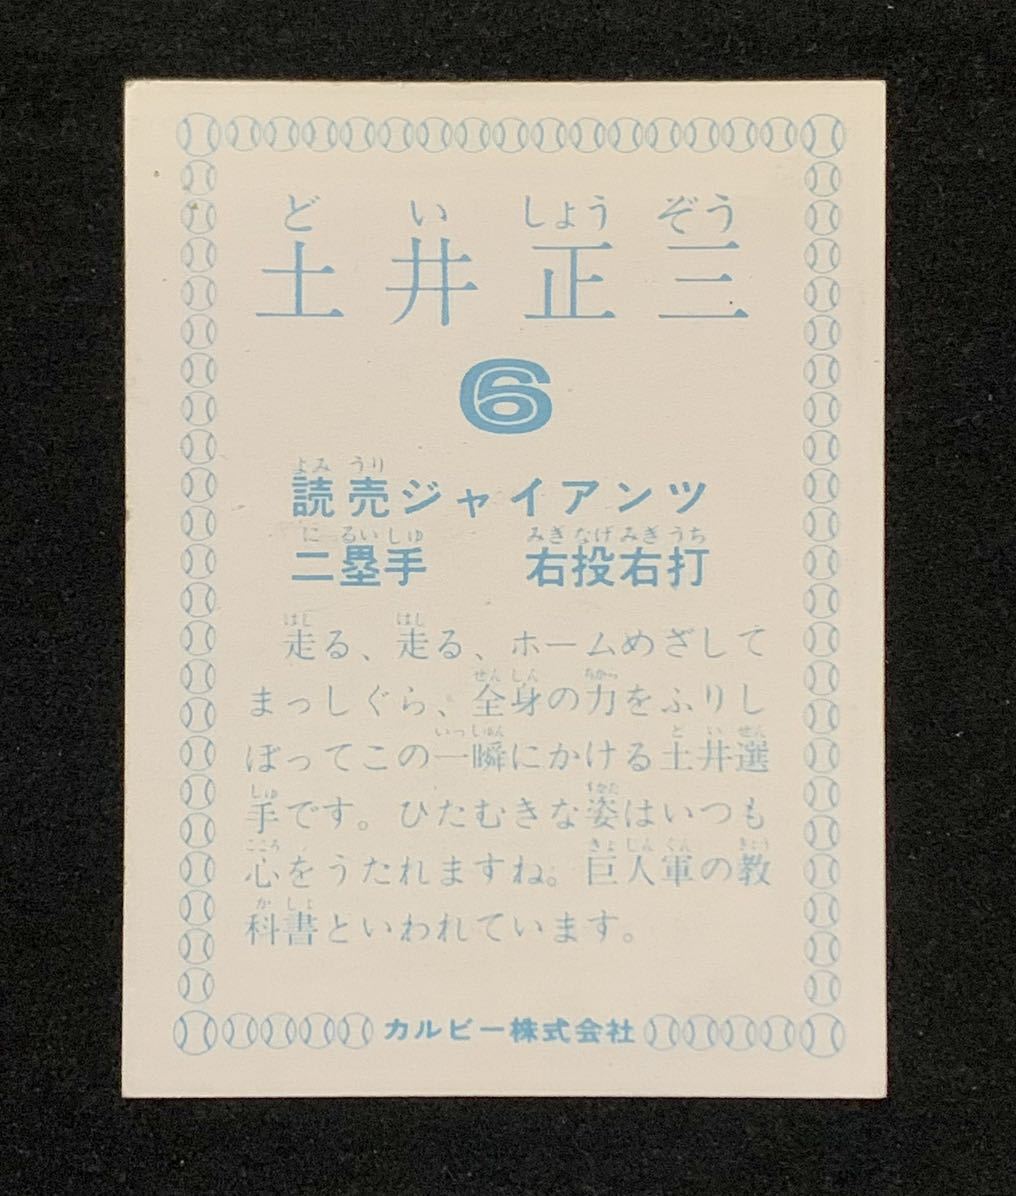 カルビー プロ野球カード 1978 78 土井正三 巨人 読売ジャイアンツ 走る、走る、ホームめざしてまっしぐら_画像2